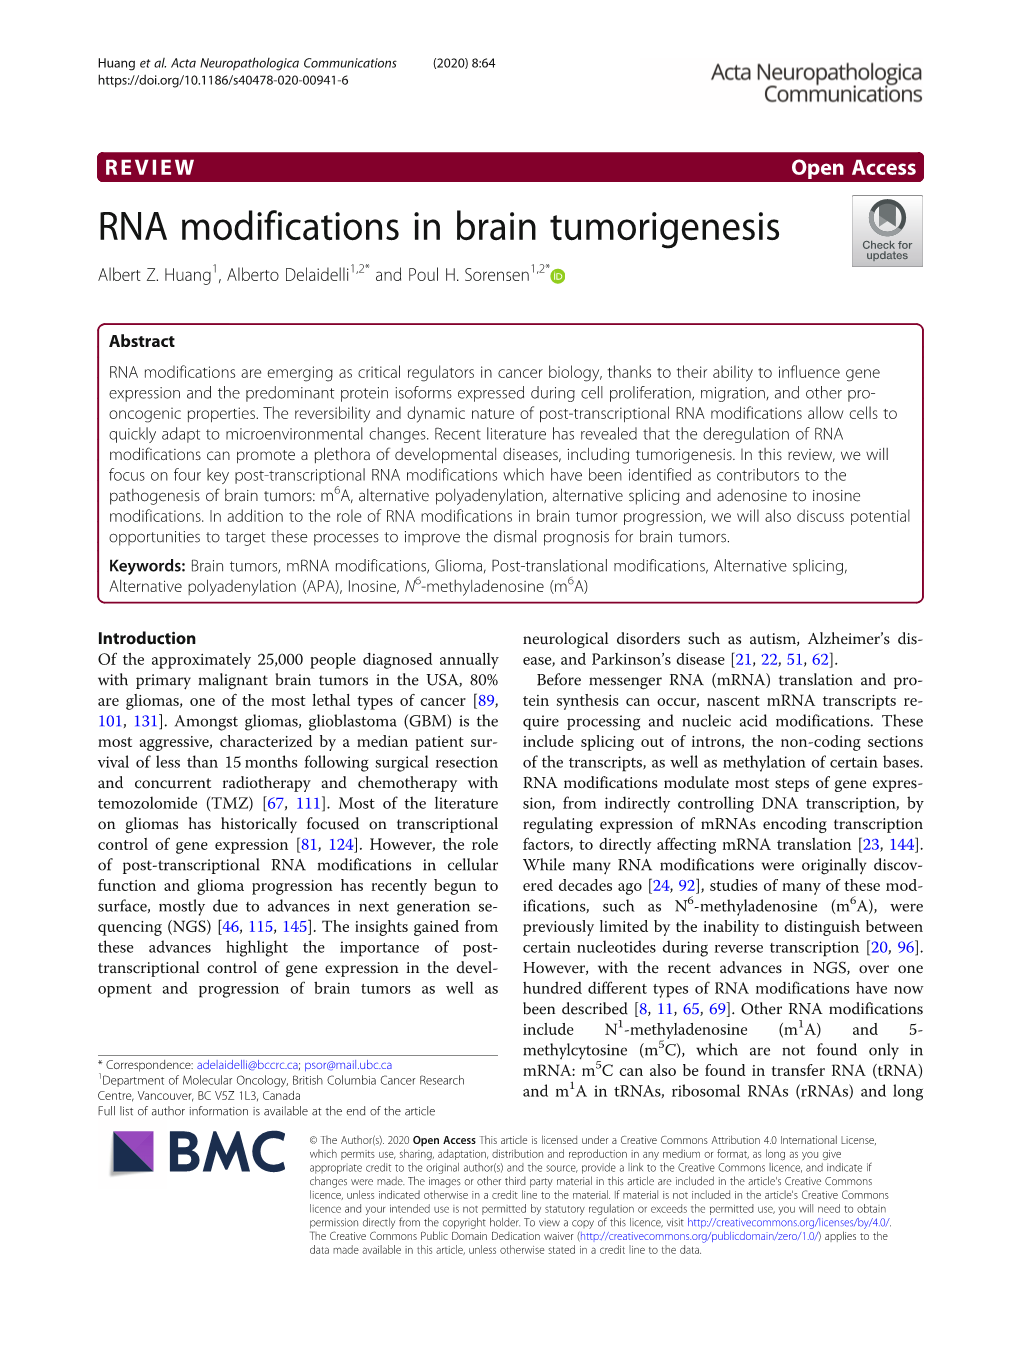 RNA Modifications in Brain Tumorigenesis Albert Z